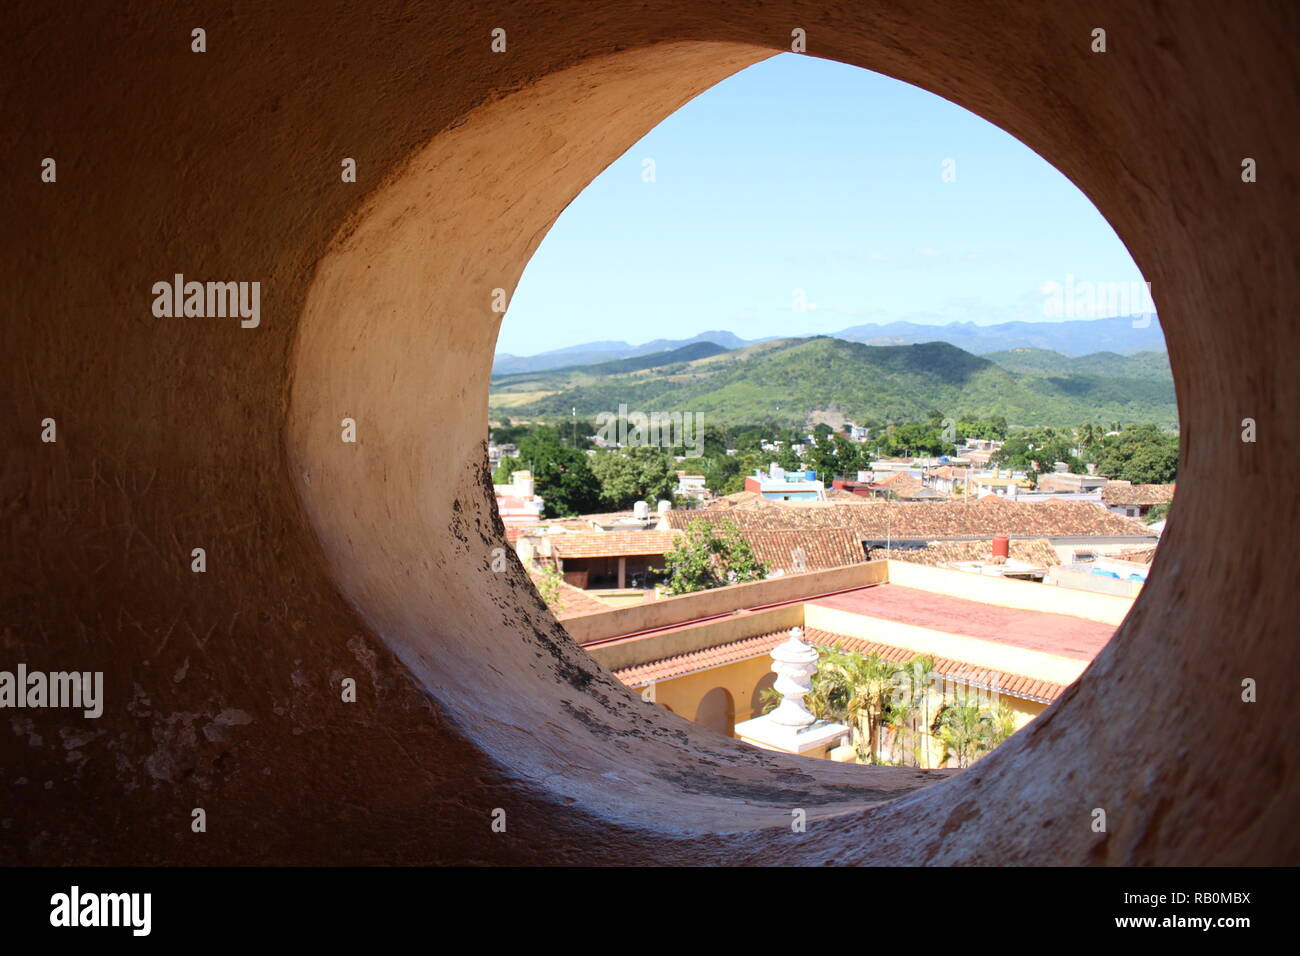 Town of Trinidad through a circular window Stock Photo